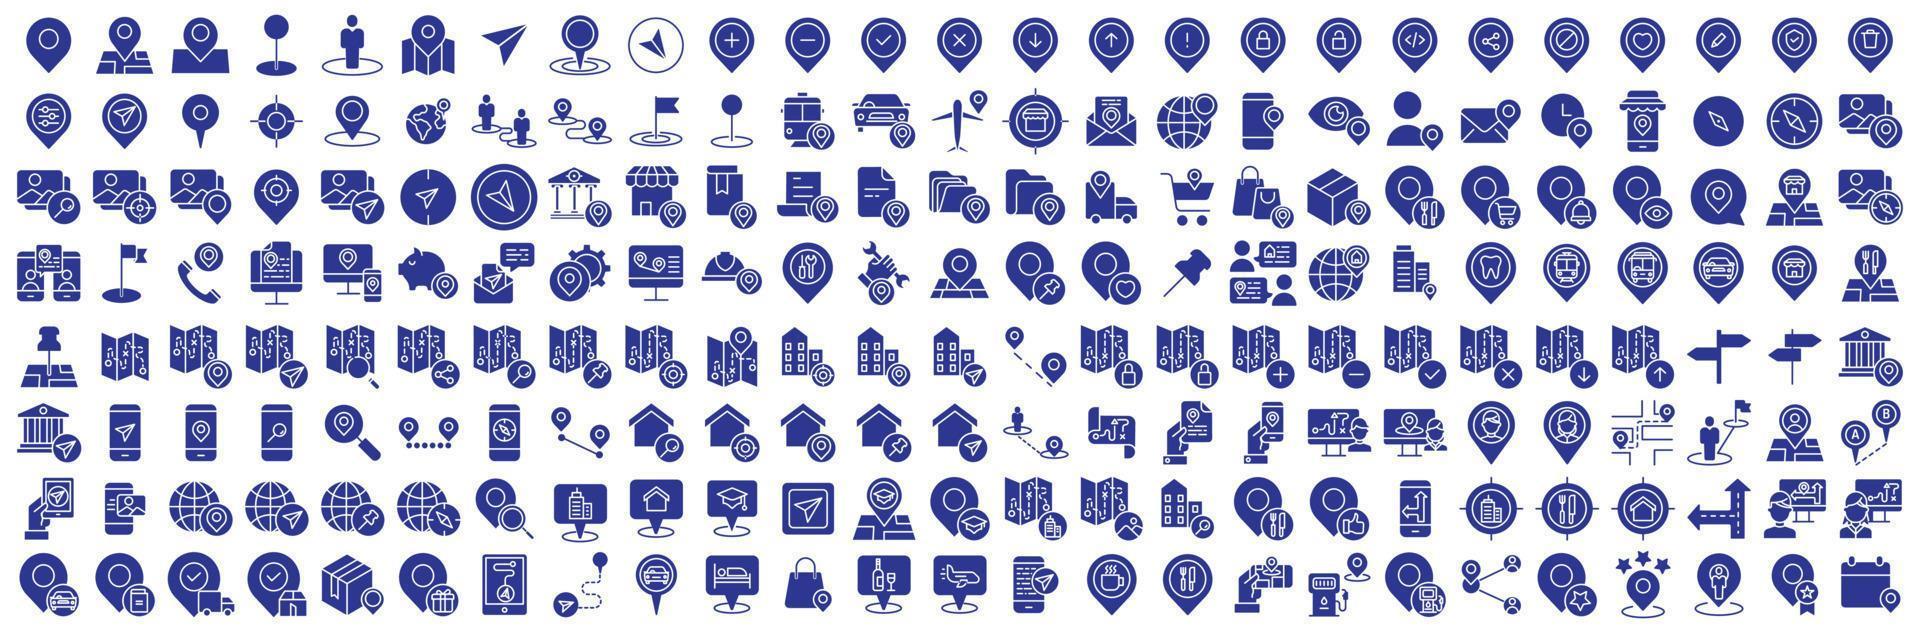 samling av ikoner relaterad till Karta stift och plats navigering, Inklusive ikoner tycka om resa, miljö, mål, jord och Mer. vektor illustrationer, pixel perfekt